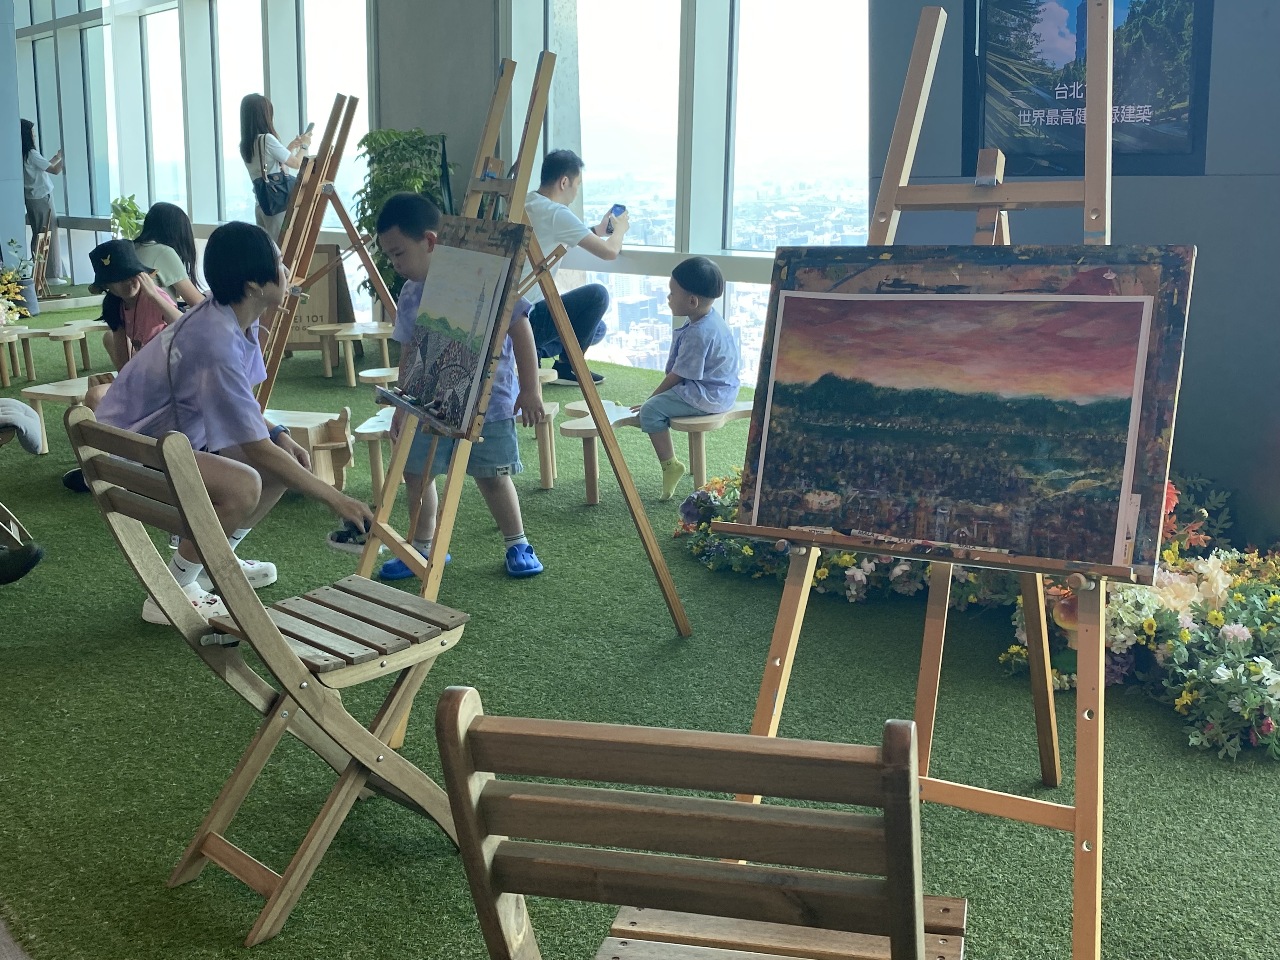 迎疫後國際旅客 台北101首推「印象台北」國際繪畫賽